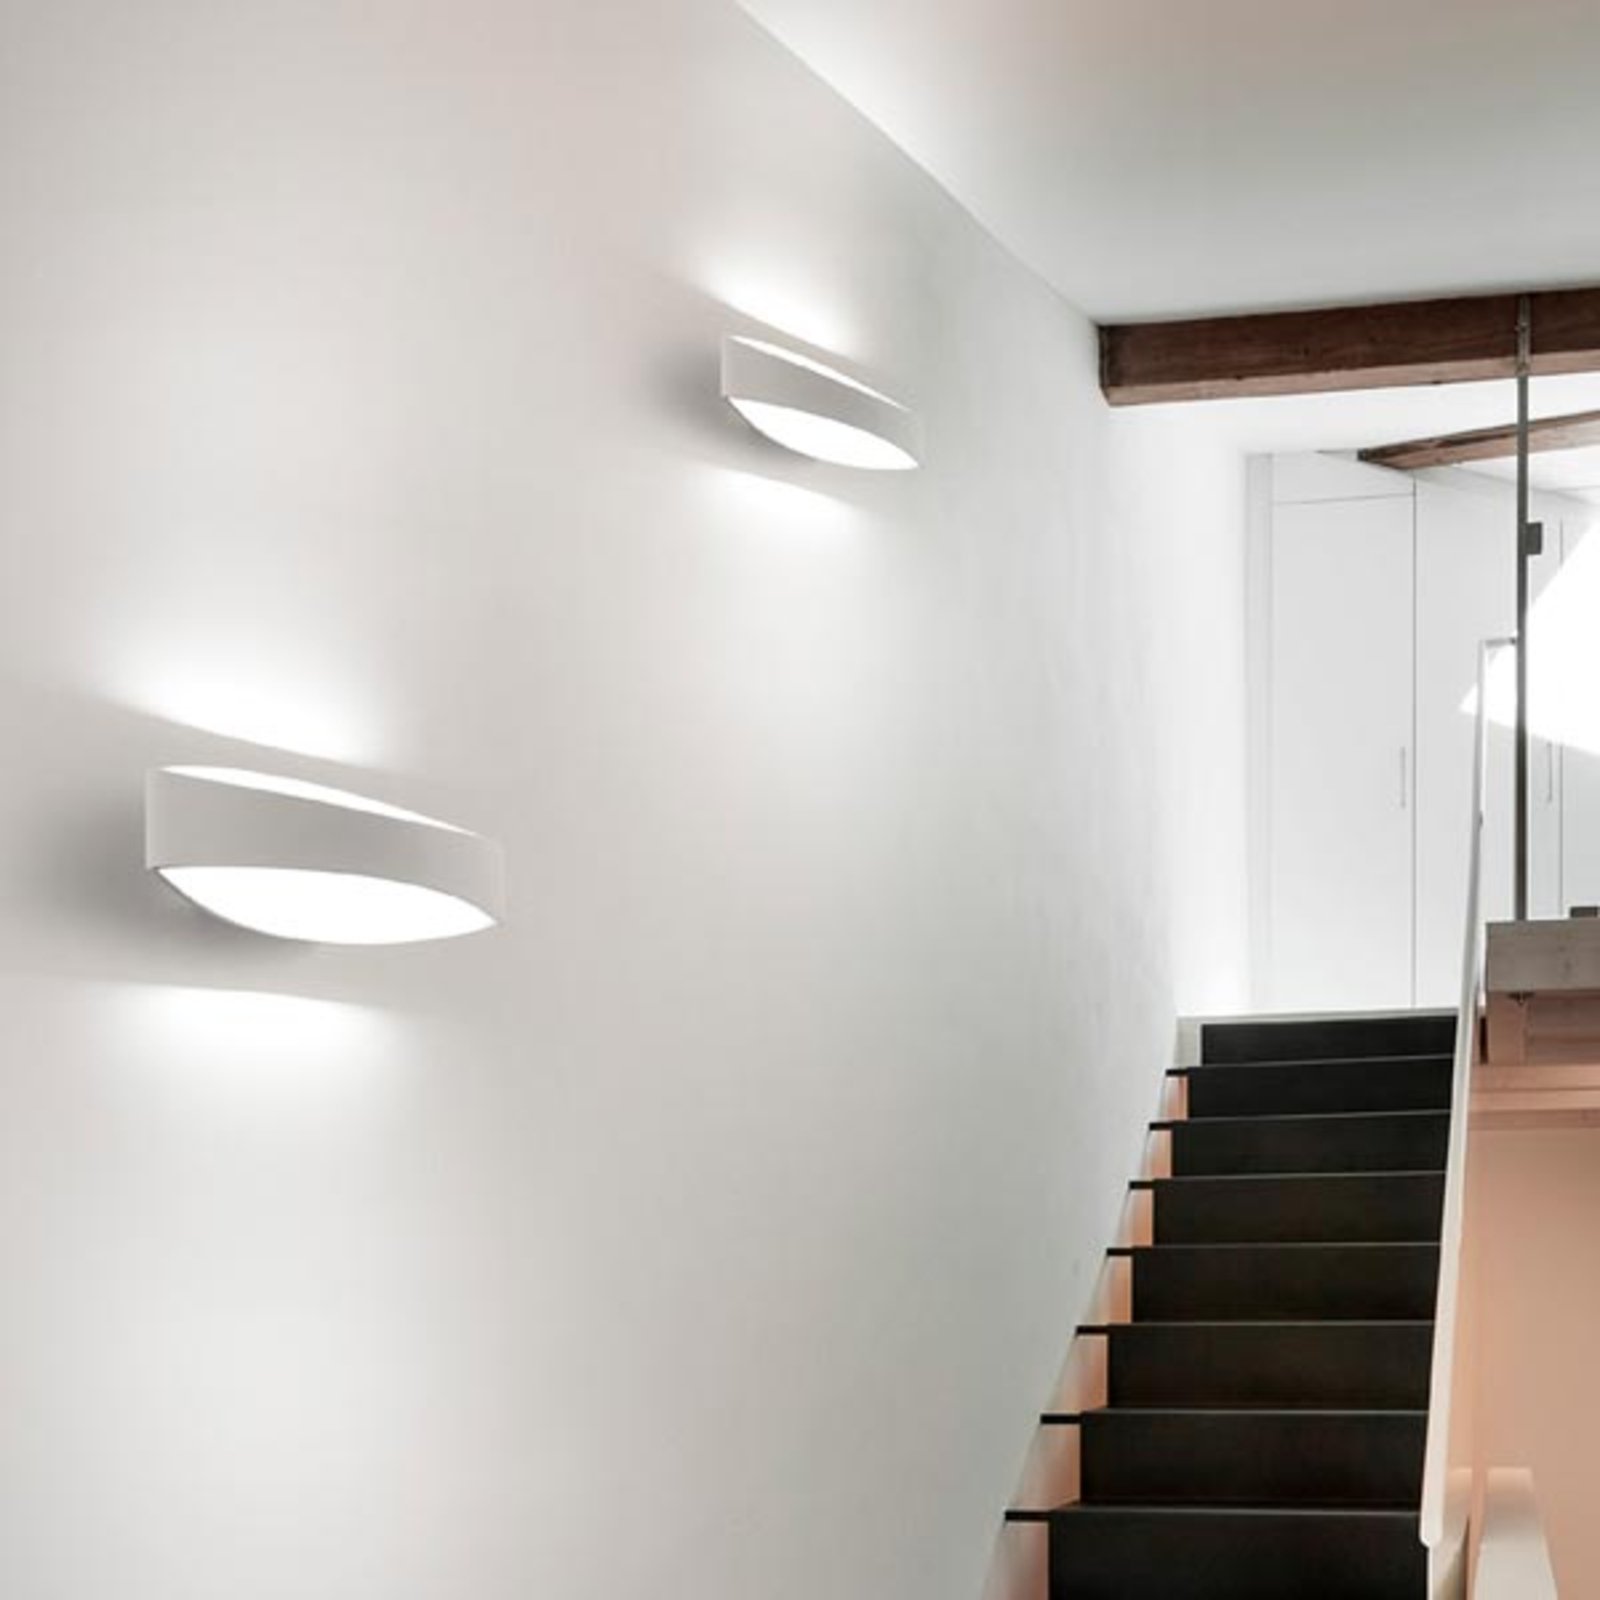 Bridge - LED wall lamp made of die-cast aluminium